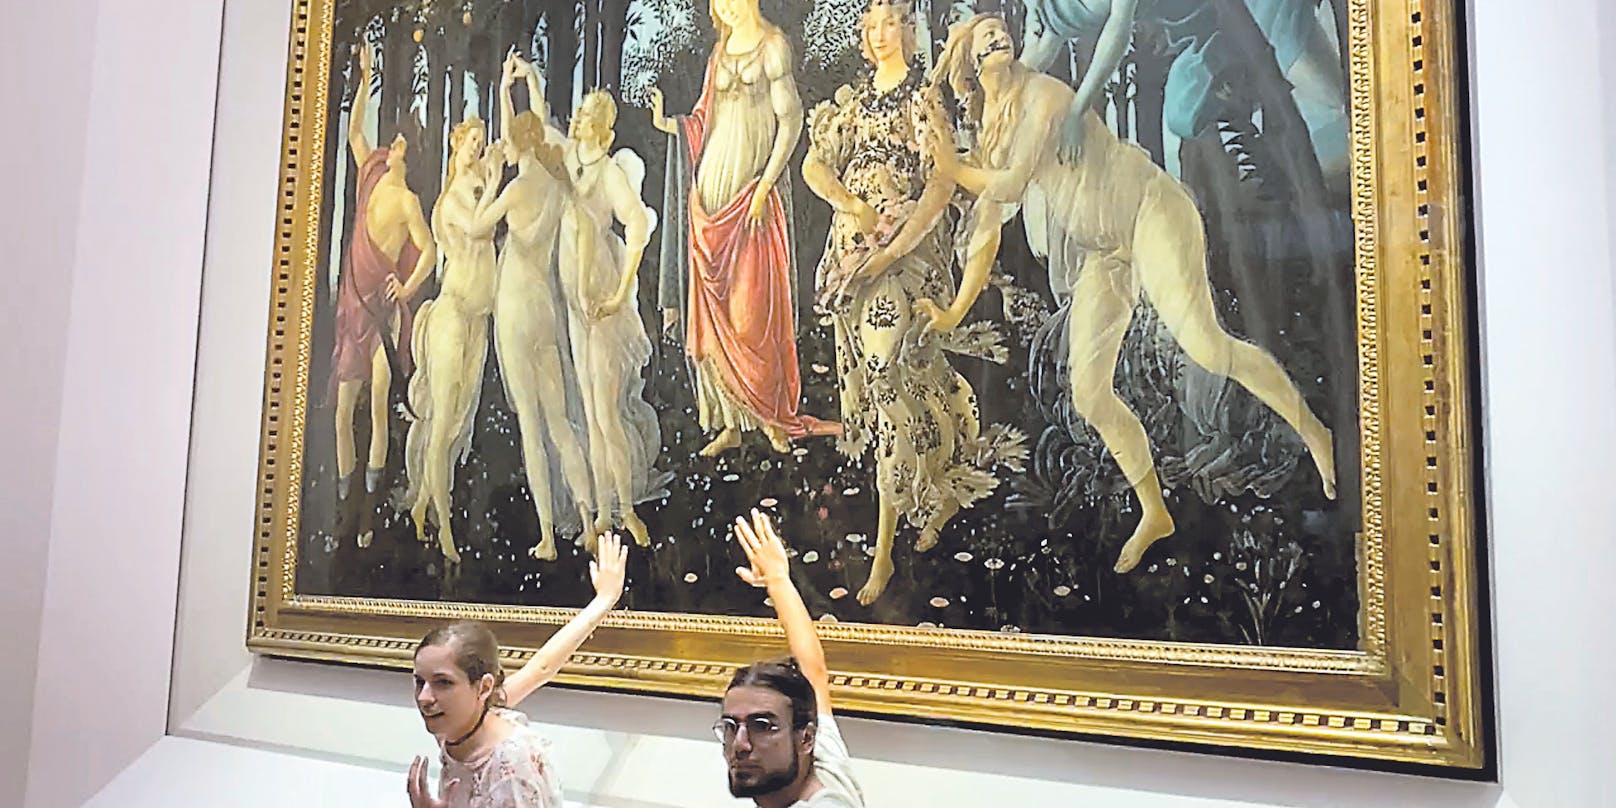 Aktivisten kleben sich in den Florentiner Uffizien an.